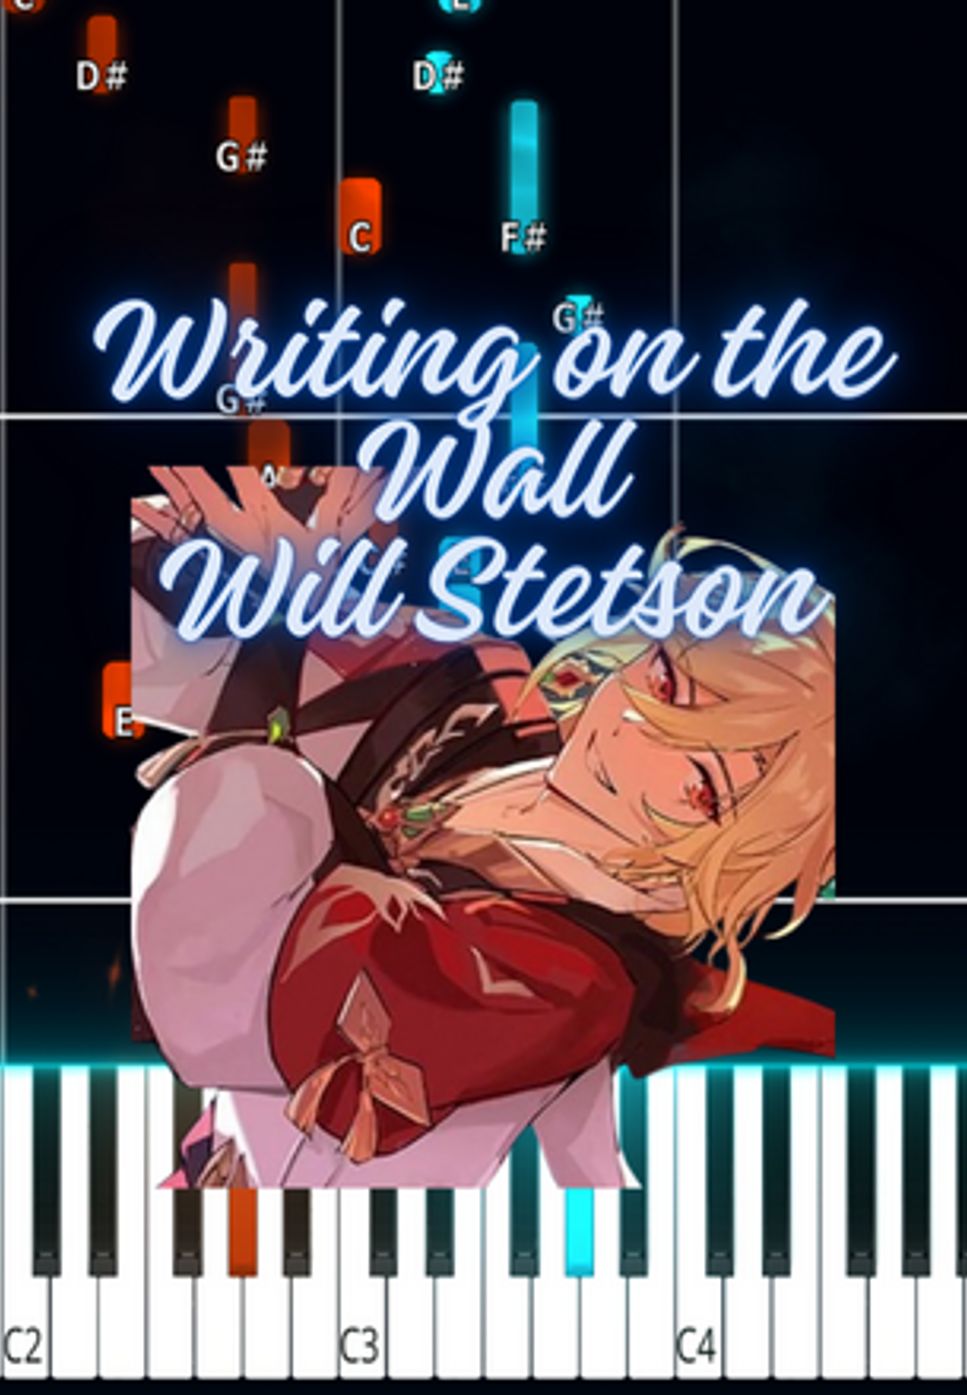 윌 스테트슨 - 벽에 글쓰기 by Marco D.